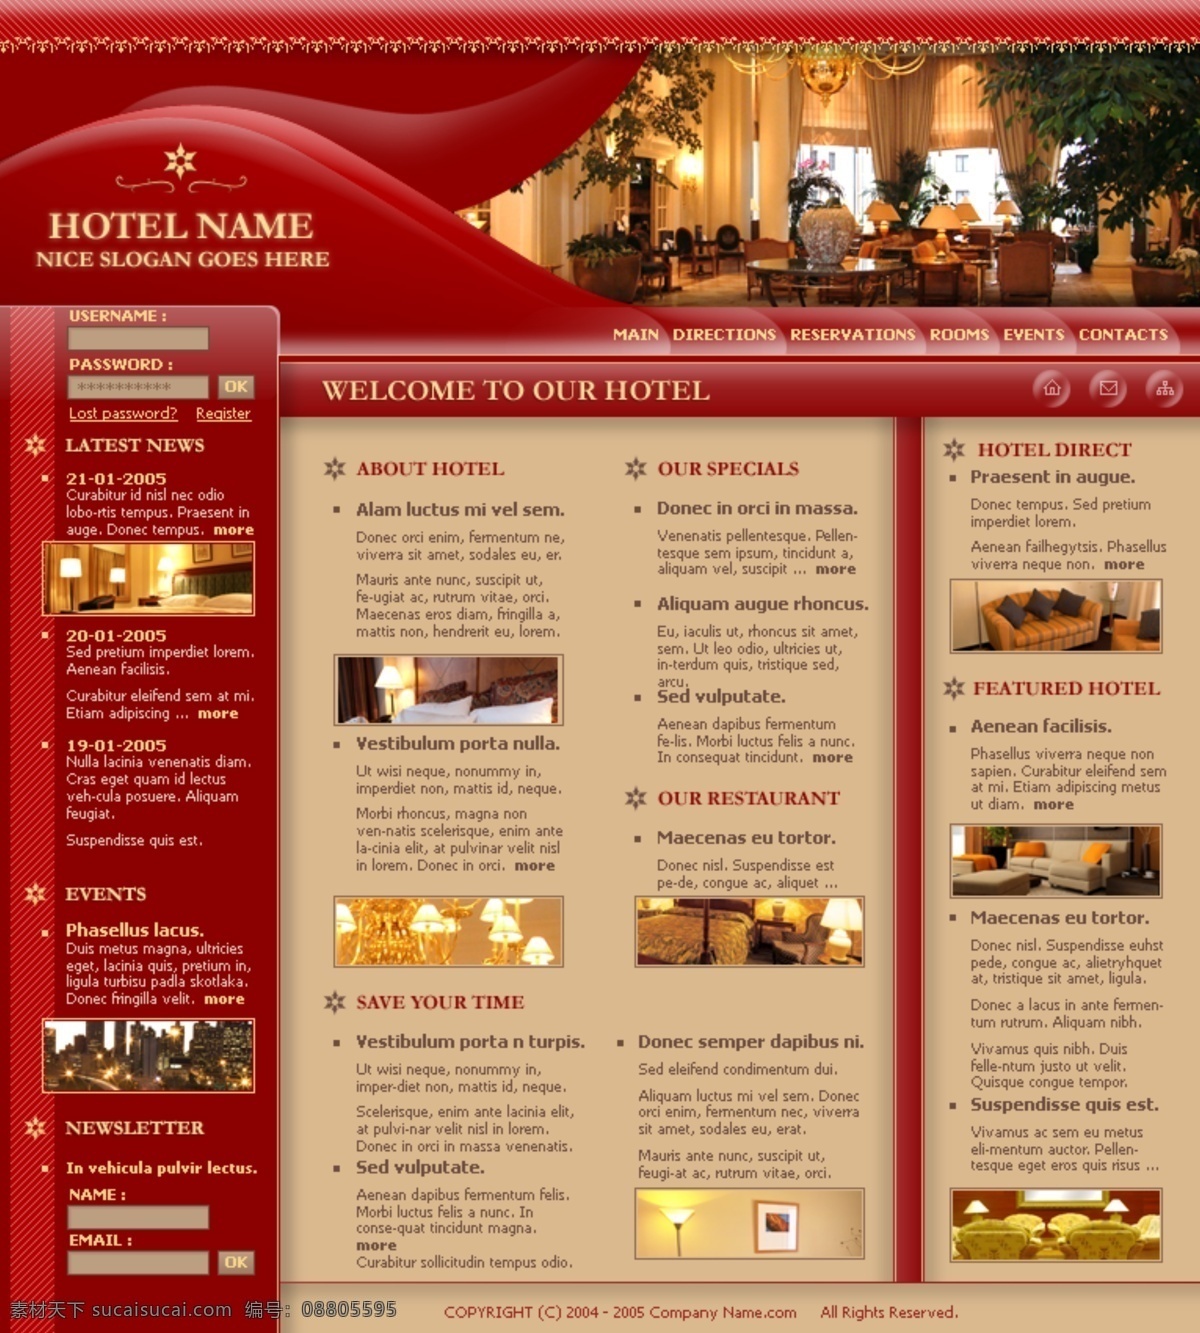 星级酒店 网页模板 分层 高贵 红色 酒店模板 星际酒店 尊贵网页模板 网页素材